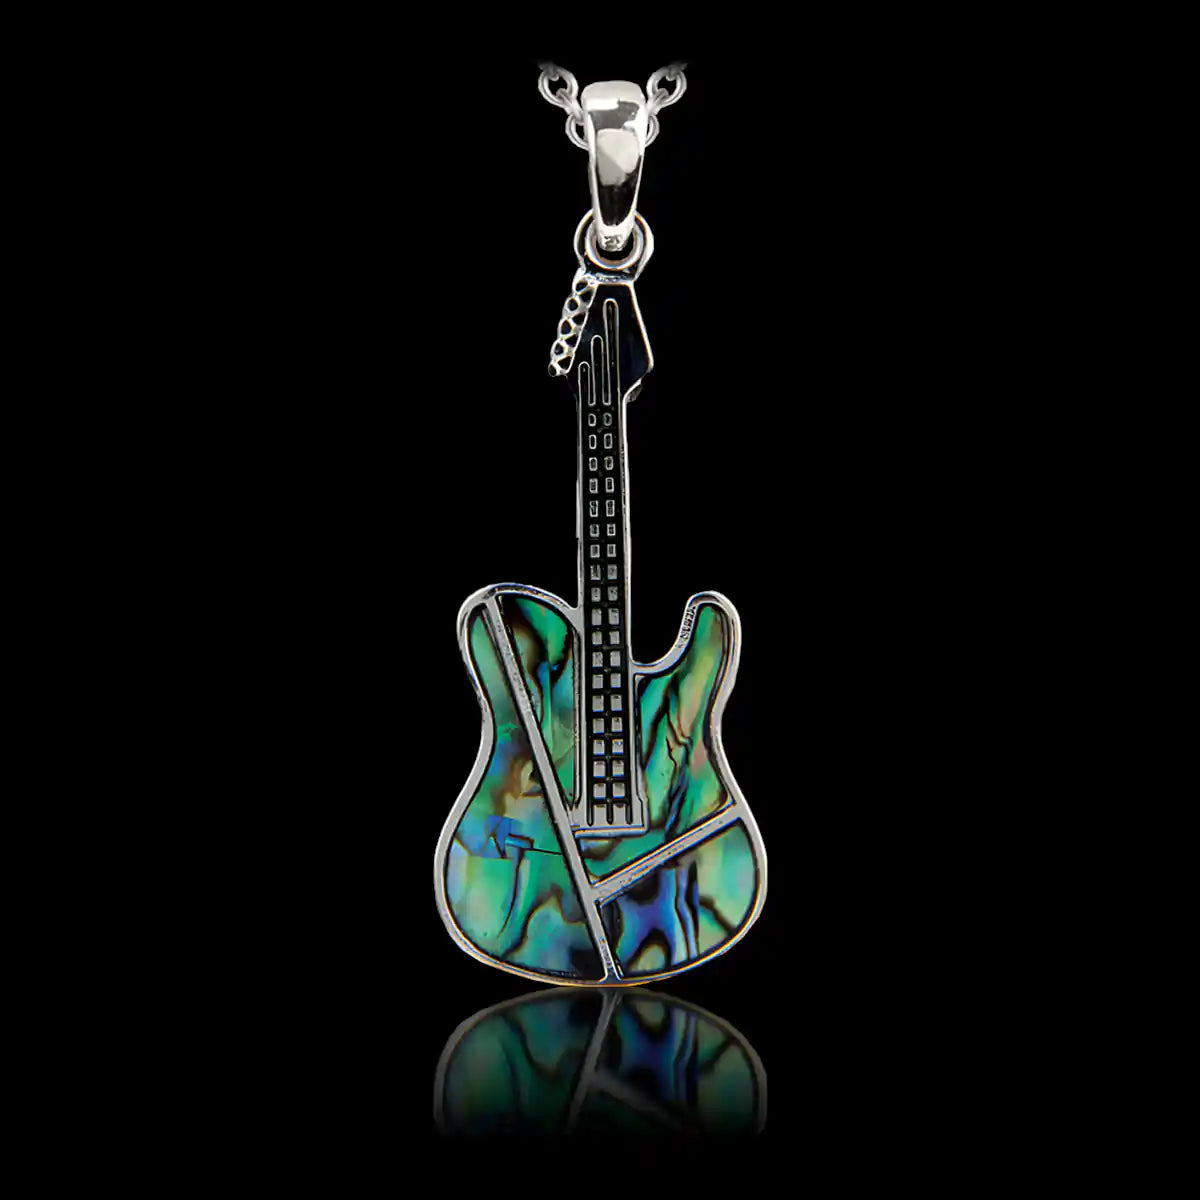 Glacier pearle guitar necklace